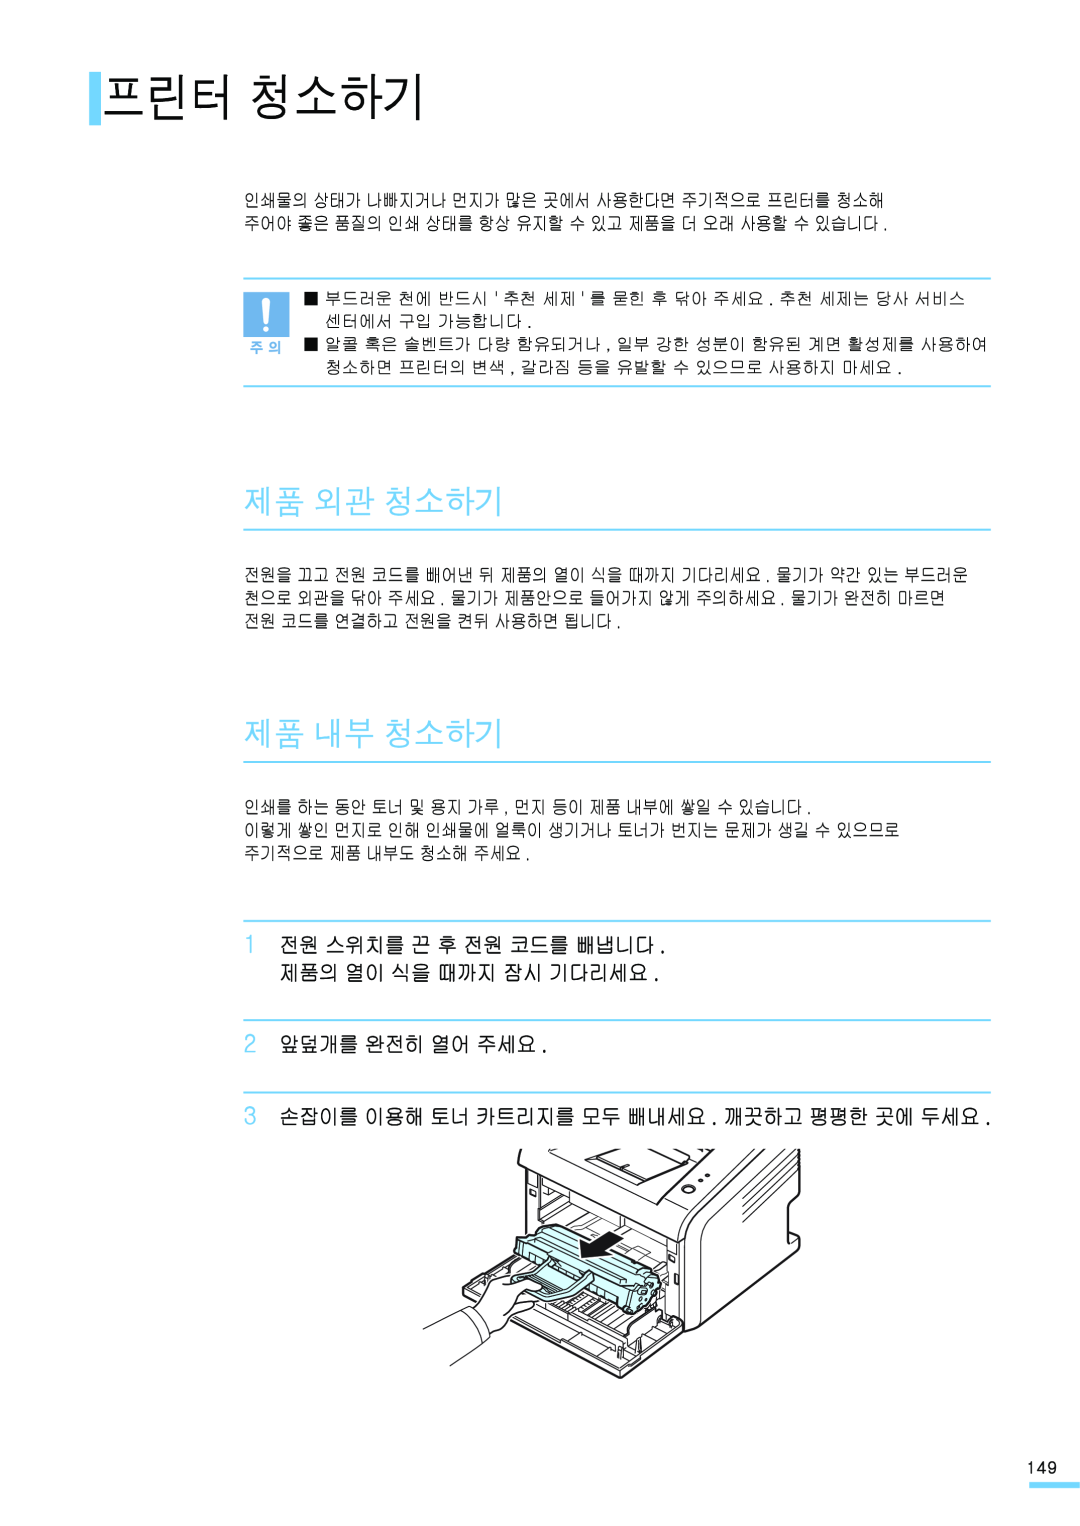 Samsung ML-2571N manual 프린터 청소하기, 제품 외관 청소하기, 제품 내부 청소하기, 2 앞덮개를 완전히 열어 주세요 3 손잡이를 이용해 토너 카트리지를 모두 빼내세요 . 깨끗하고 평평한 곳에 두세요 